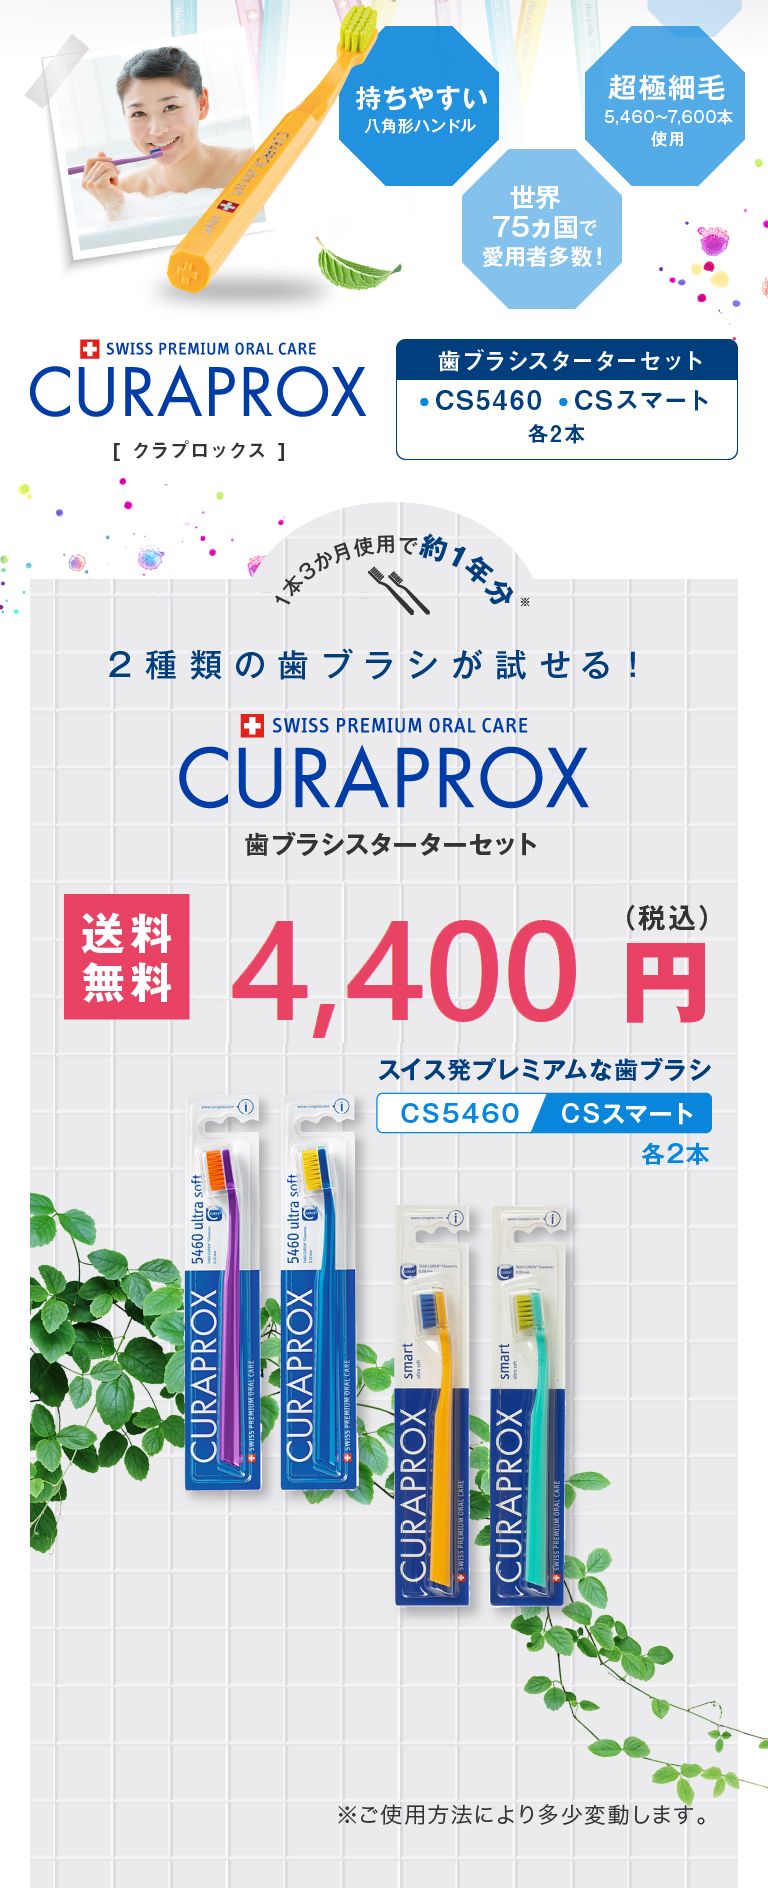 2種類の歯ブラシが試せる！クラプロックス歯ブラシ スターターセット 送料無料3,960円(税込)